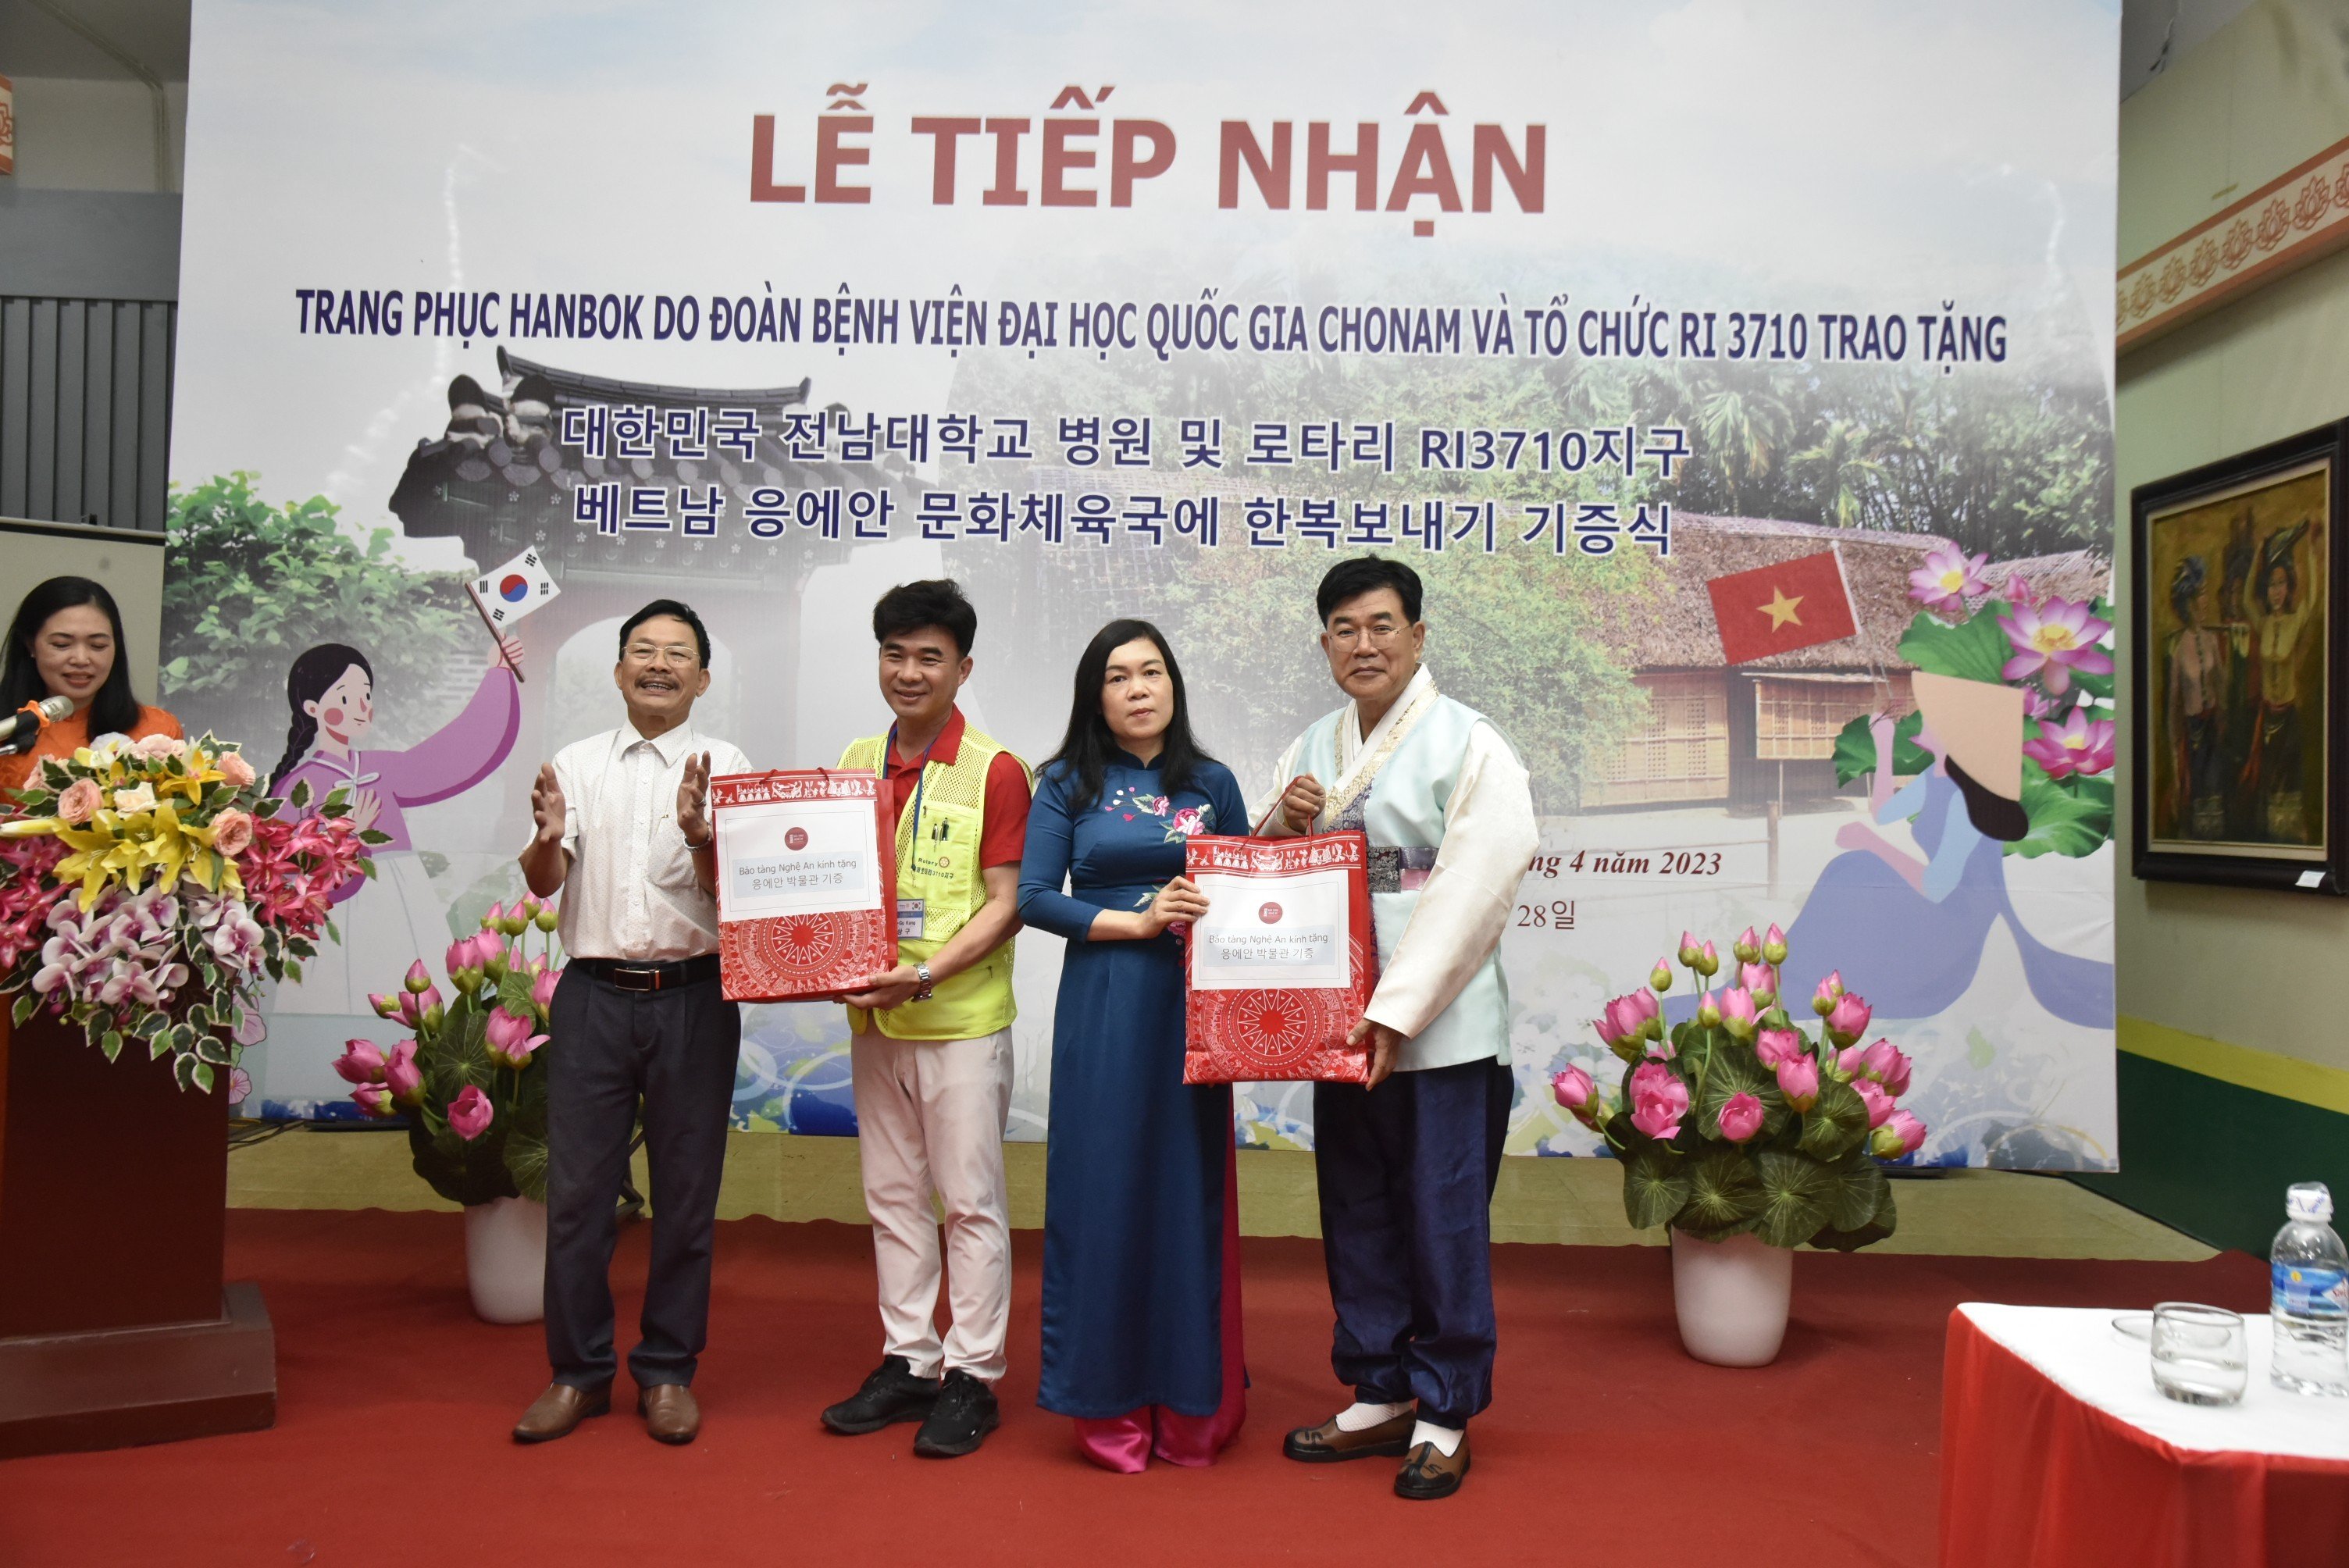 Bảo tàng Nghệ An tiếp nhận trang phục truyền thống Hanbok do Bệnh viện Đại học quốc gia Chonam và Tổ chức Rotary quốc tế quận 3710 (Hàn Quốc) trao tặng.